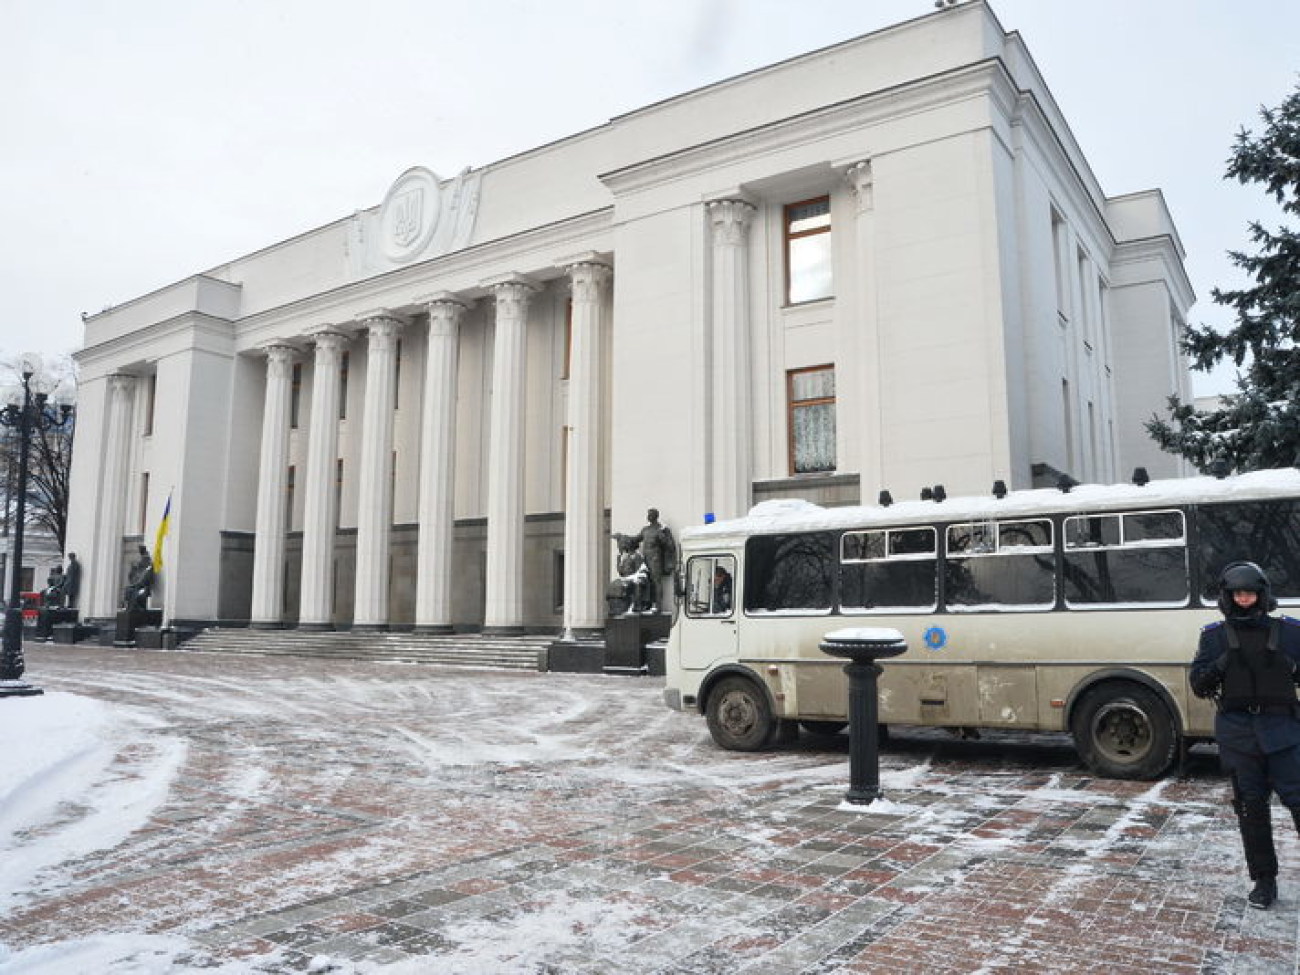 Арбузов принимал Кабмин под БТРы и водометы, 29 января 2014г.